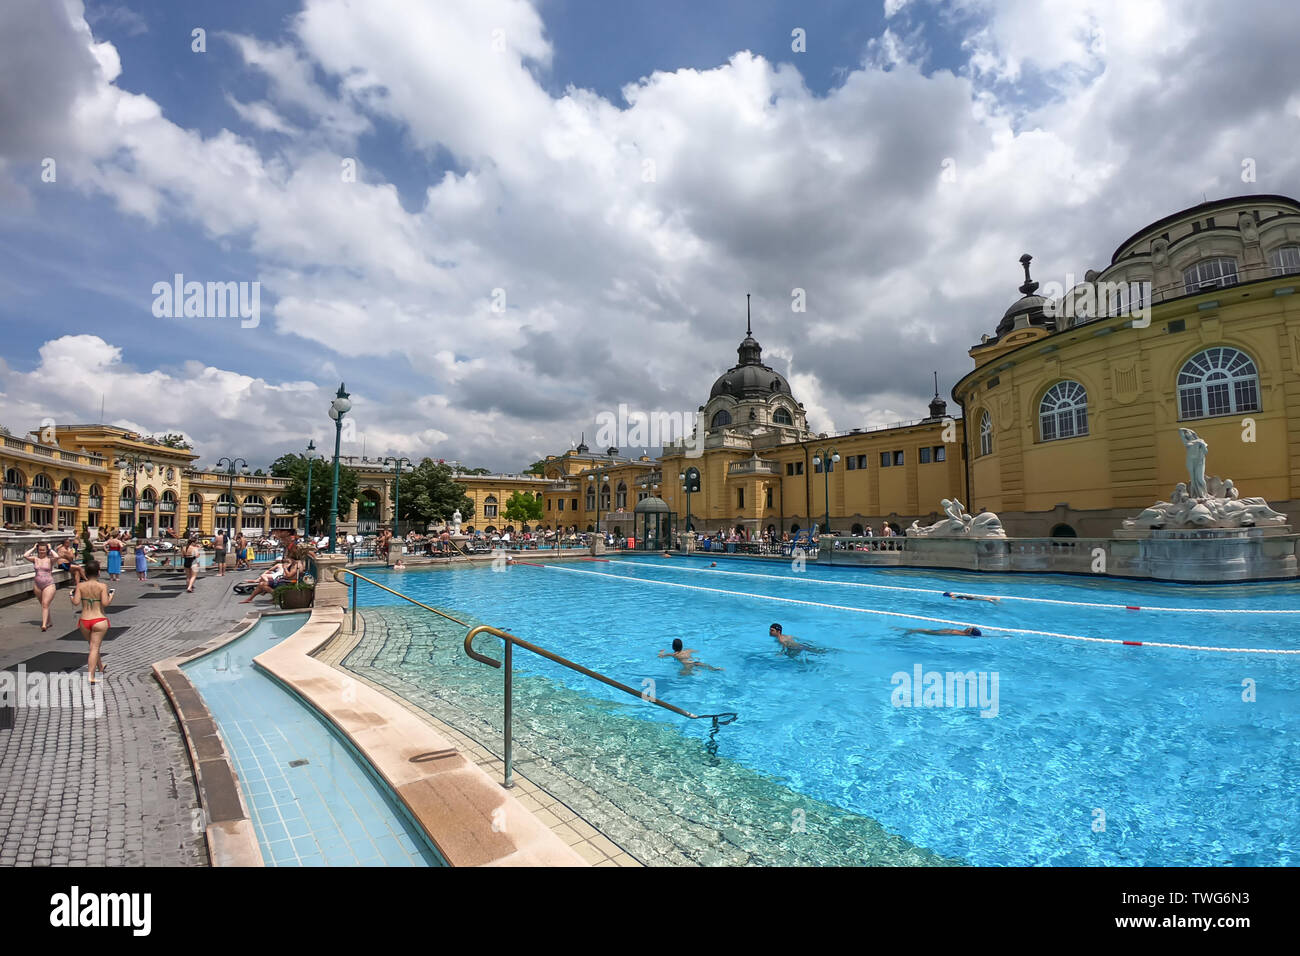 Les Bains Széchenyi à Budapest, station thermale - bain thermal en plein air complexe dans Budapest. Hongrie Banque D'Images